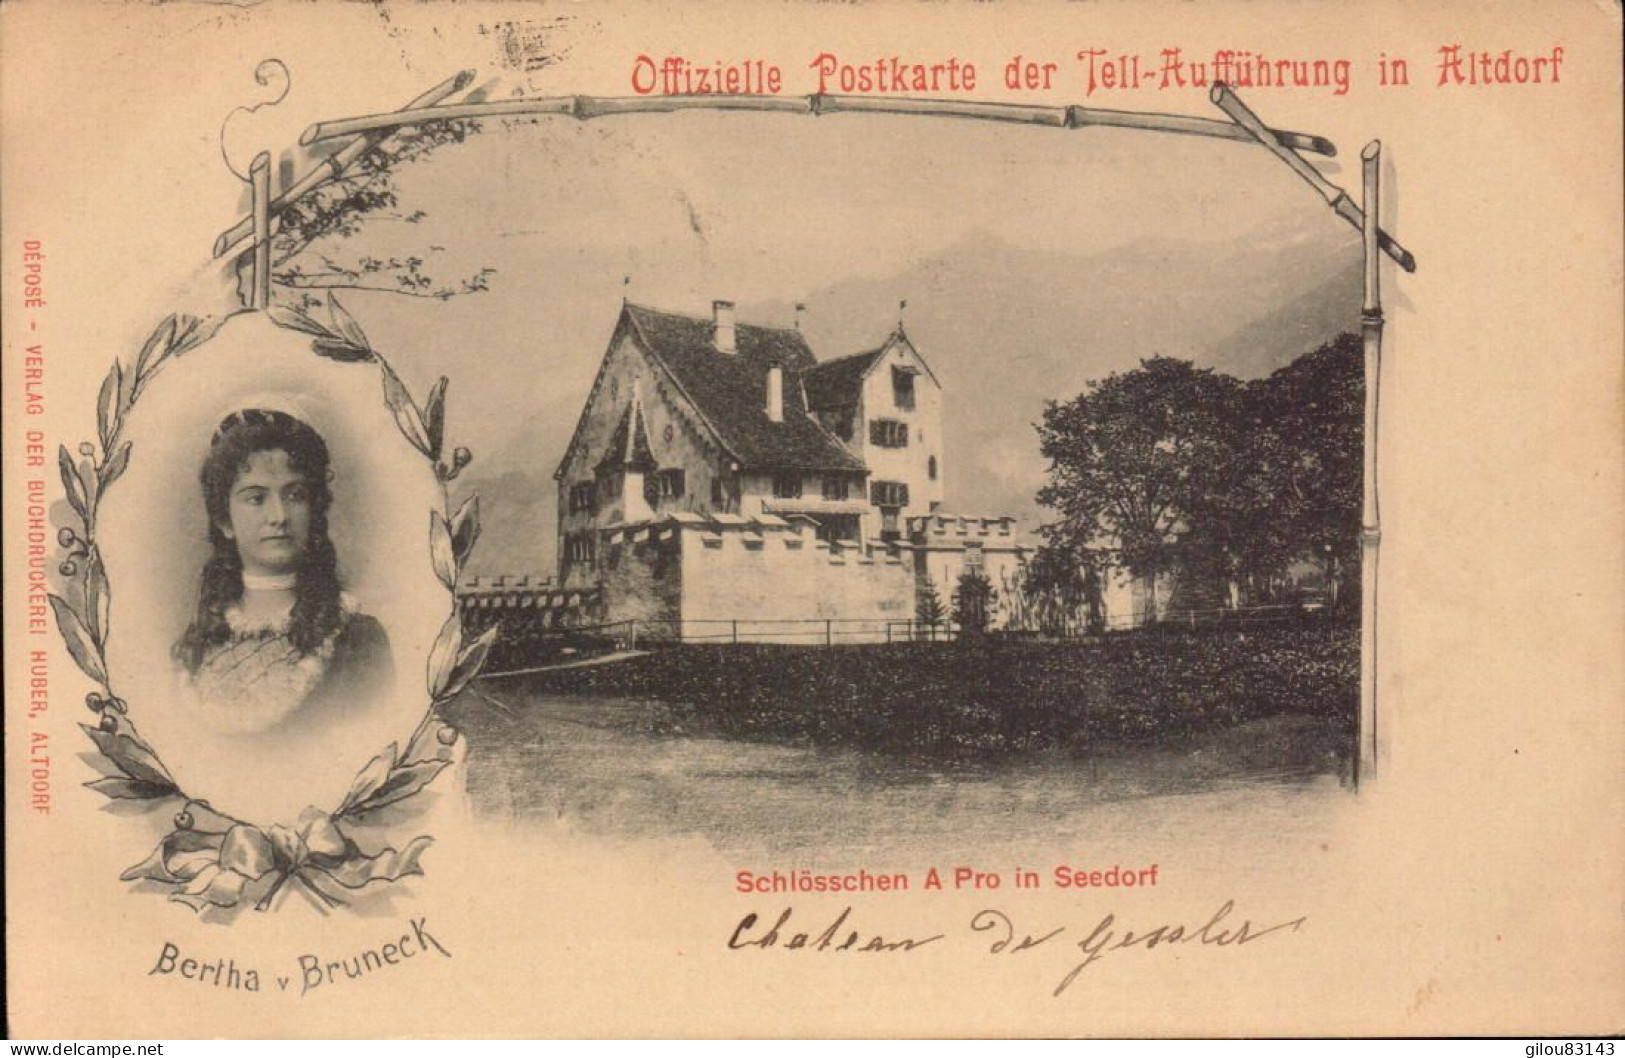 Suisse, Altdorf, Offizielle Postkarte Der Tell-auffuhrung - Altdorf